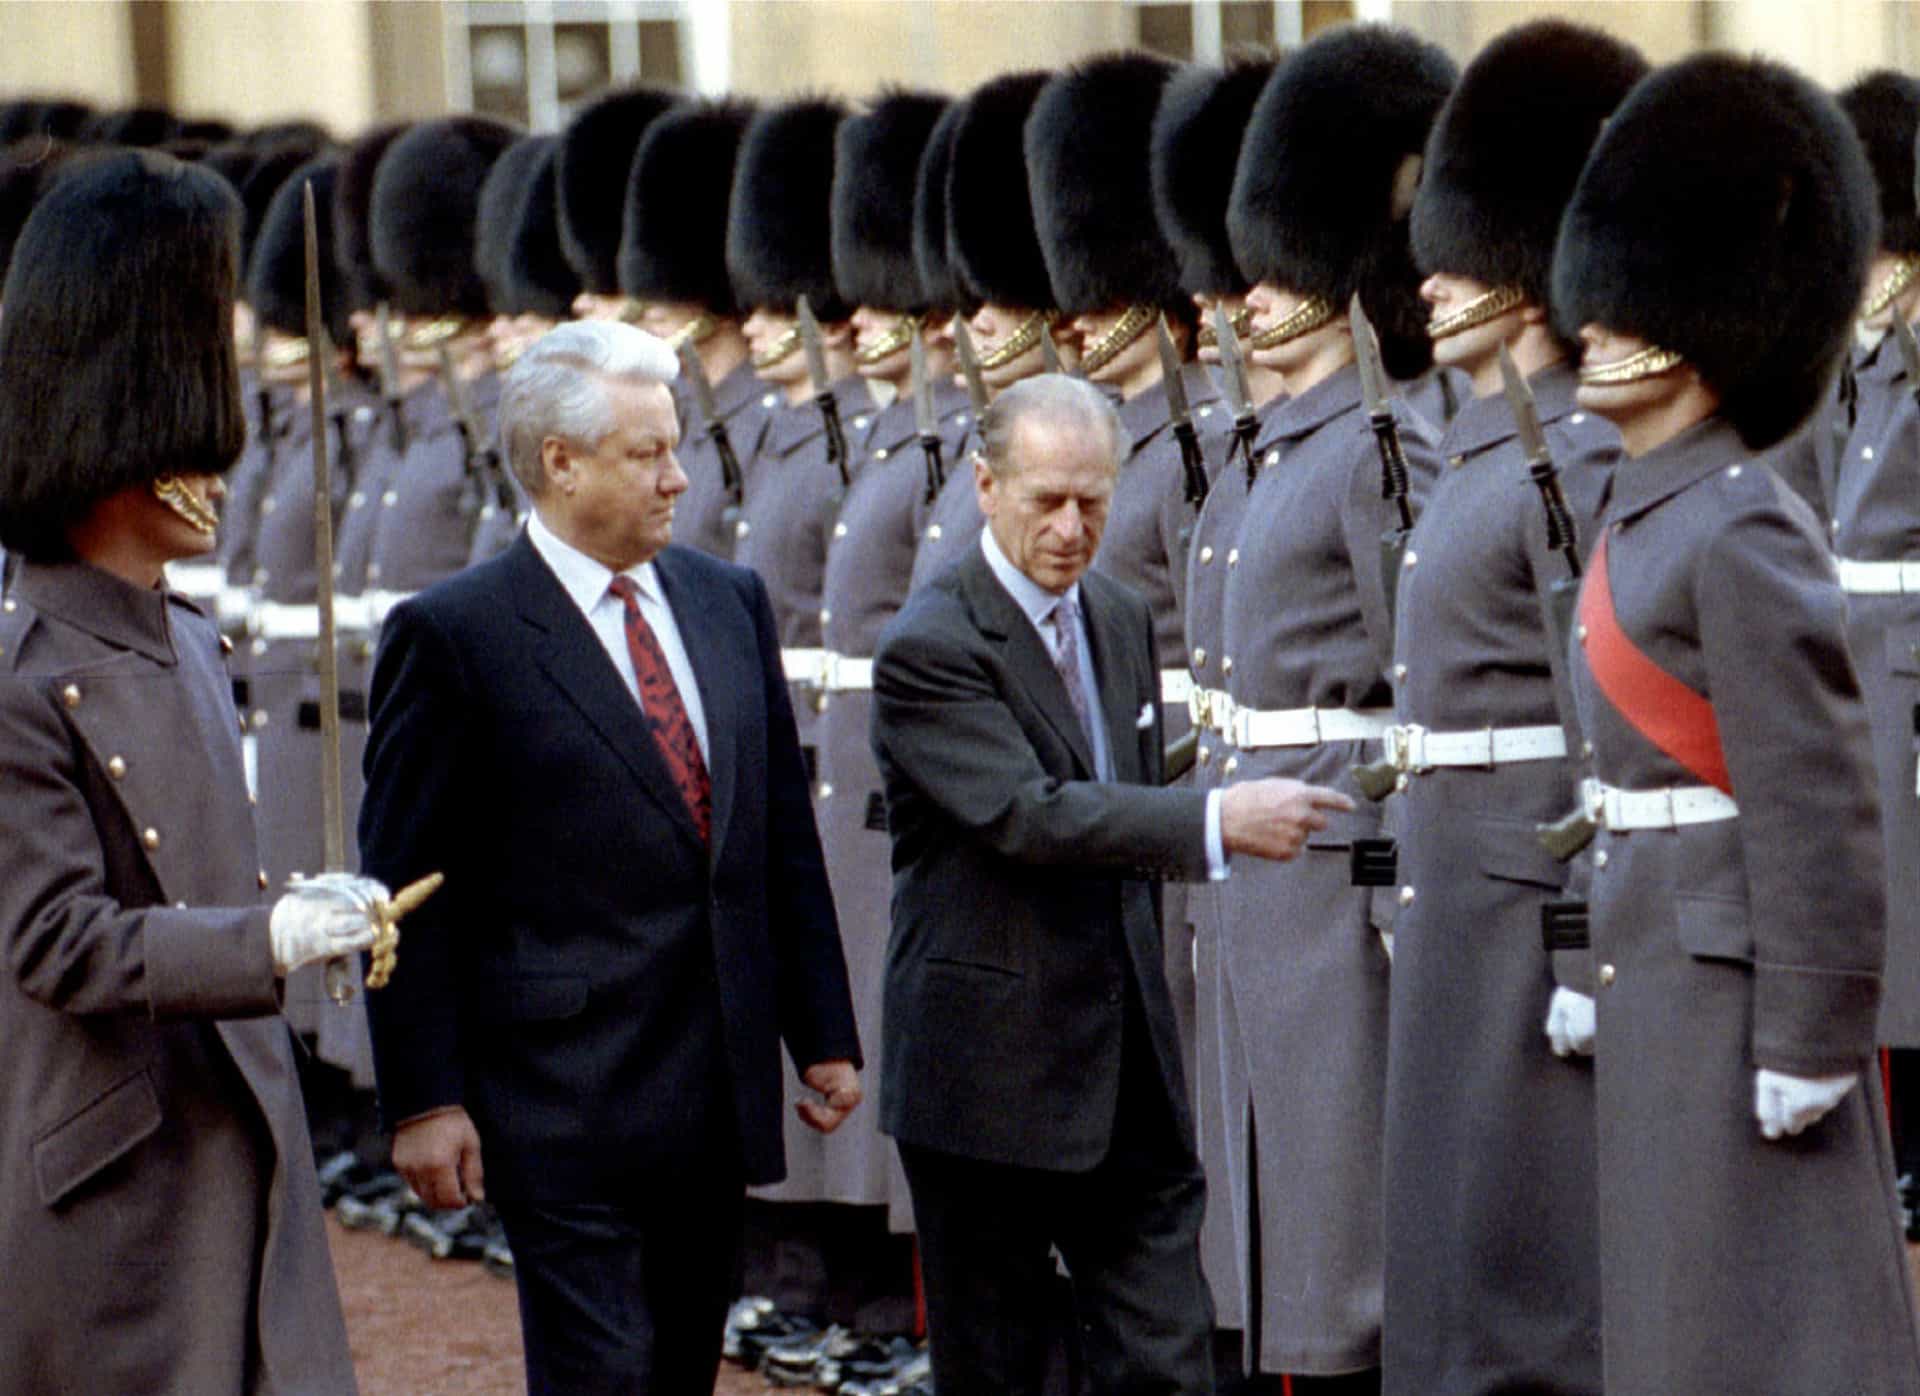 El presidente ruso Boris Yeltsin observa a los Guardas de Honor junto al príncipe Felipe, en el Buckingham Palace (Londres, 1992).